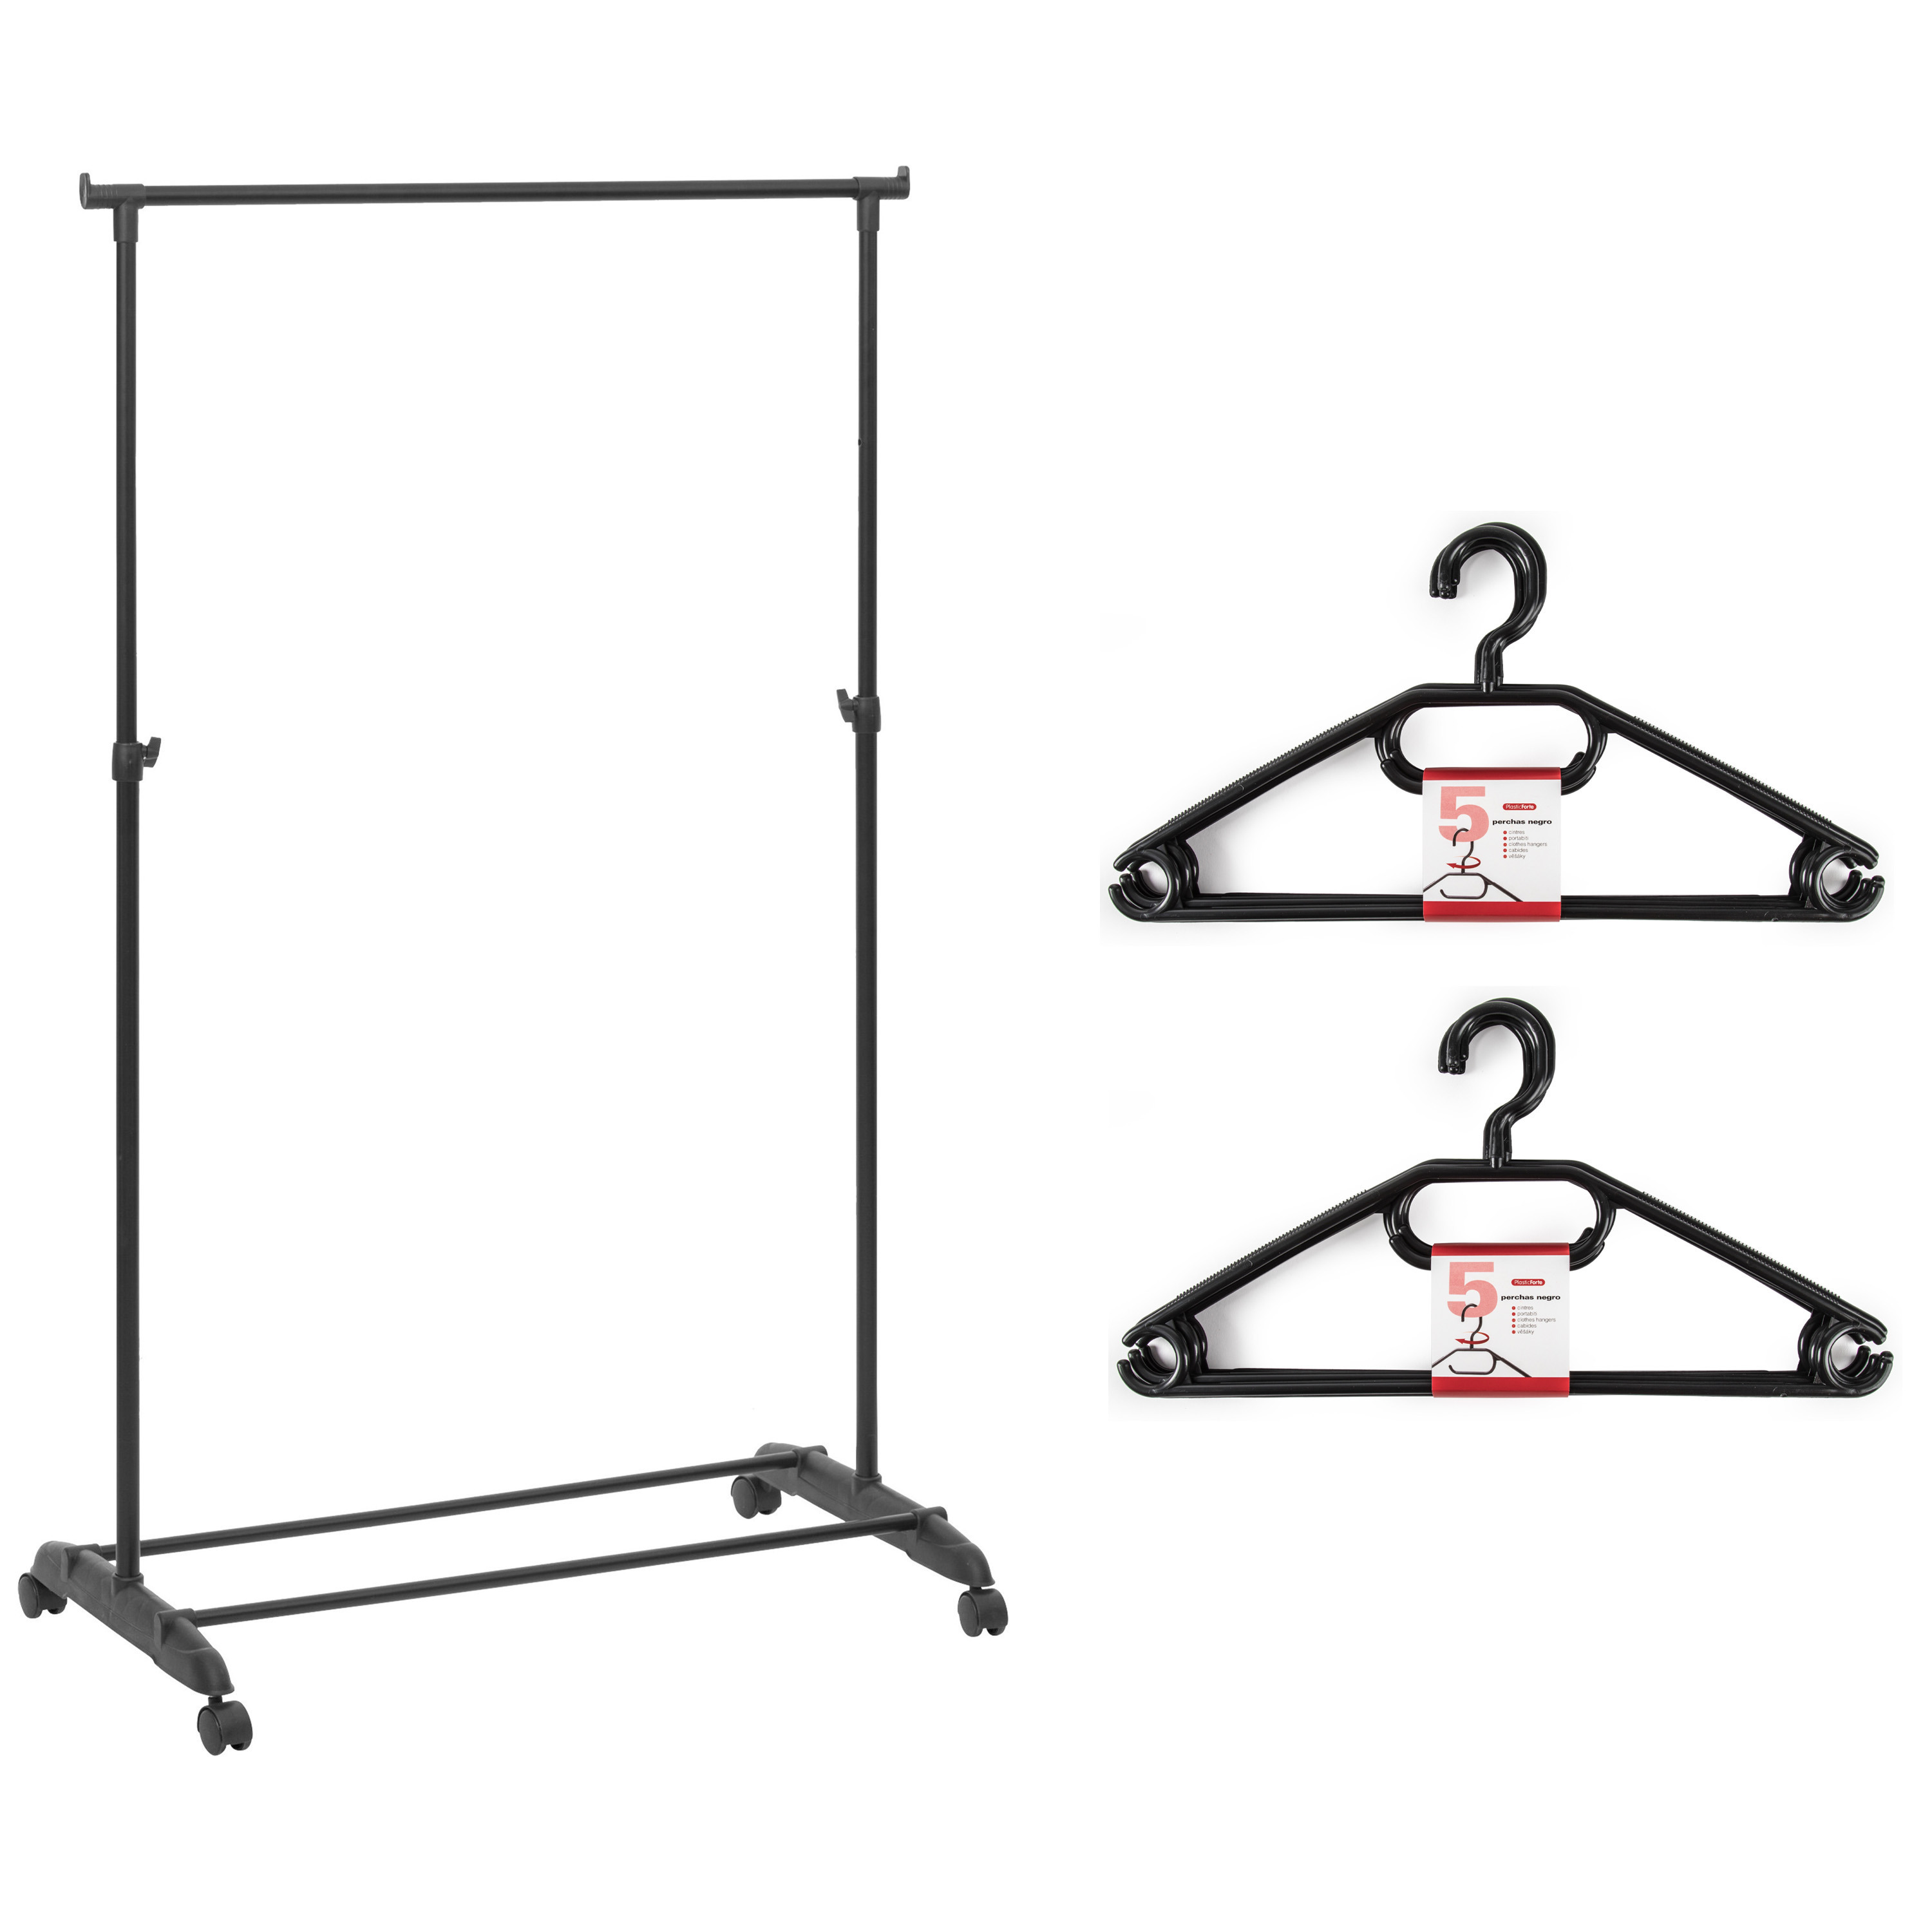 Kledingrek met kleding hangers enkele stang kunststof zwart 80 x 42 x 160 cm